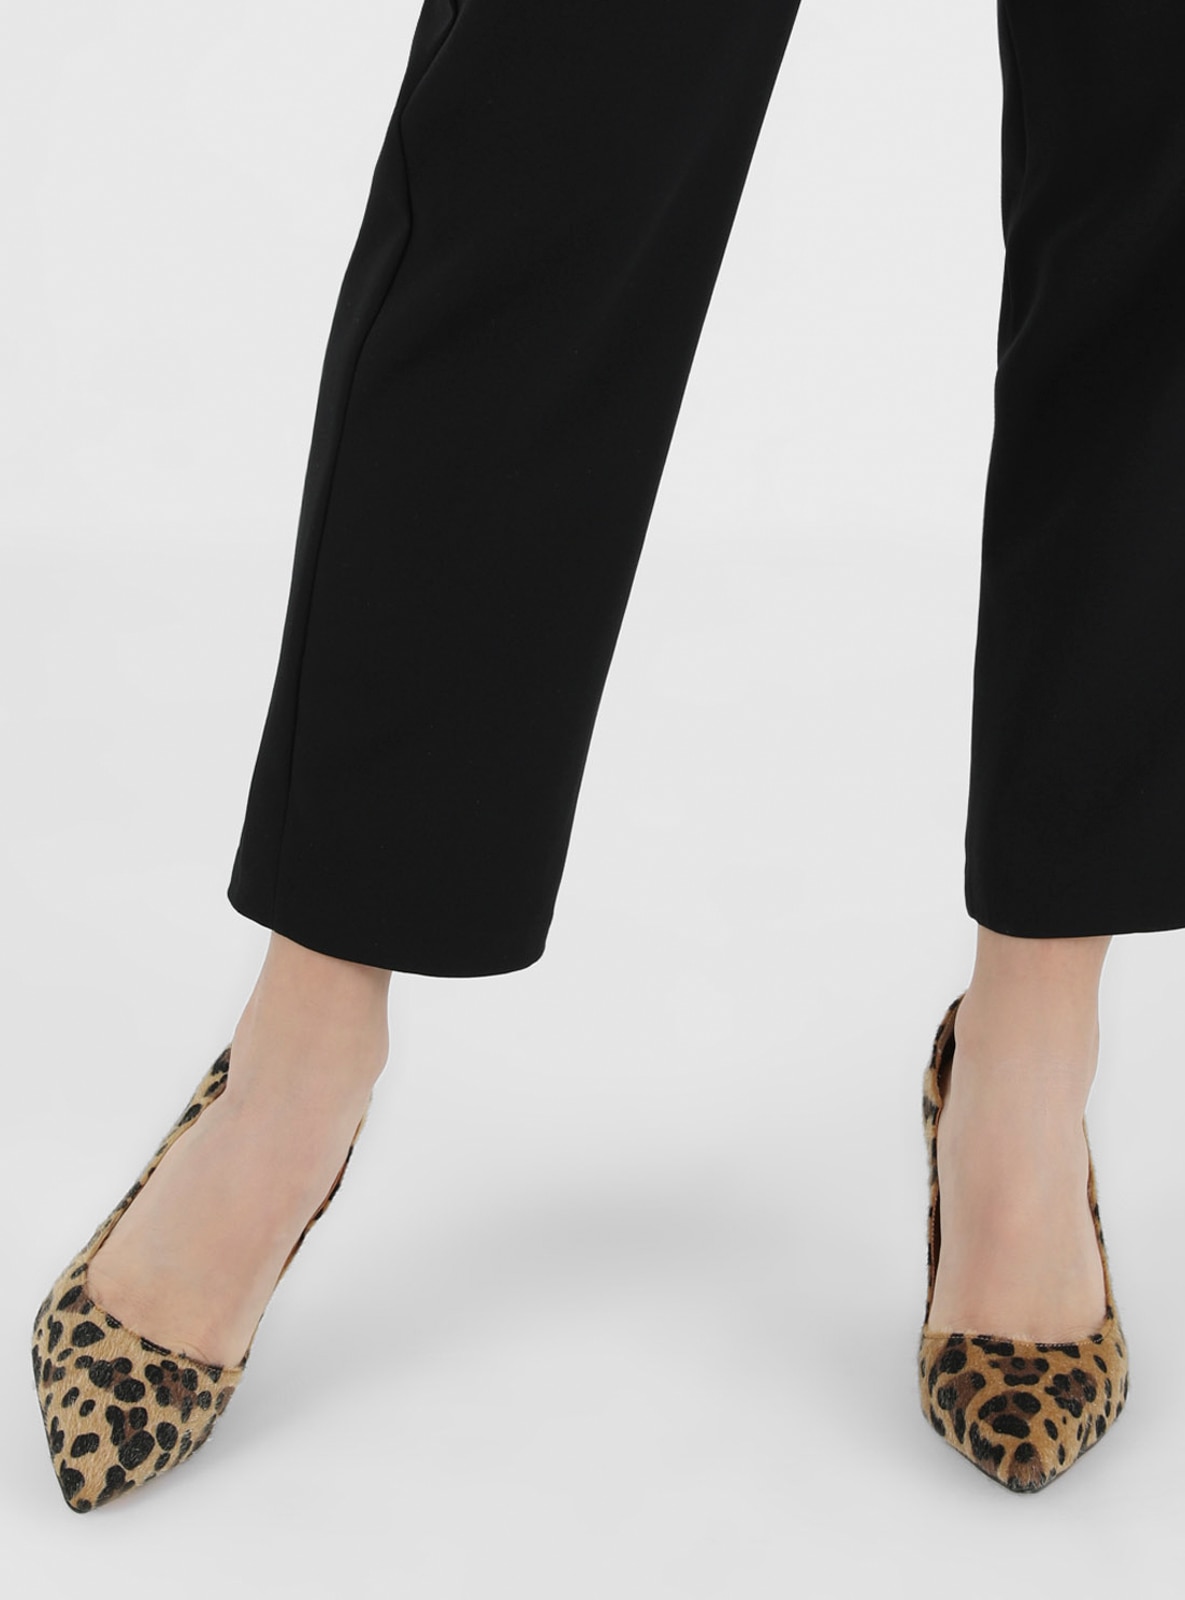 Zara Leopard Print Mule Heels Shoes Size 4 Smokey Brown Airfit Comfort  Perspex | eBay